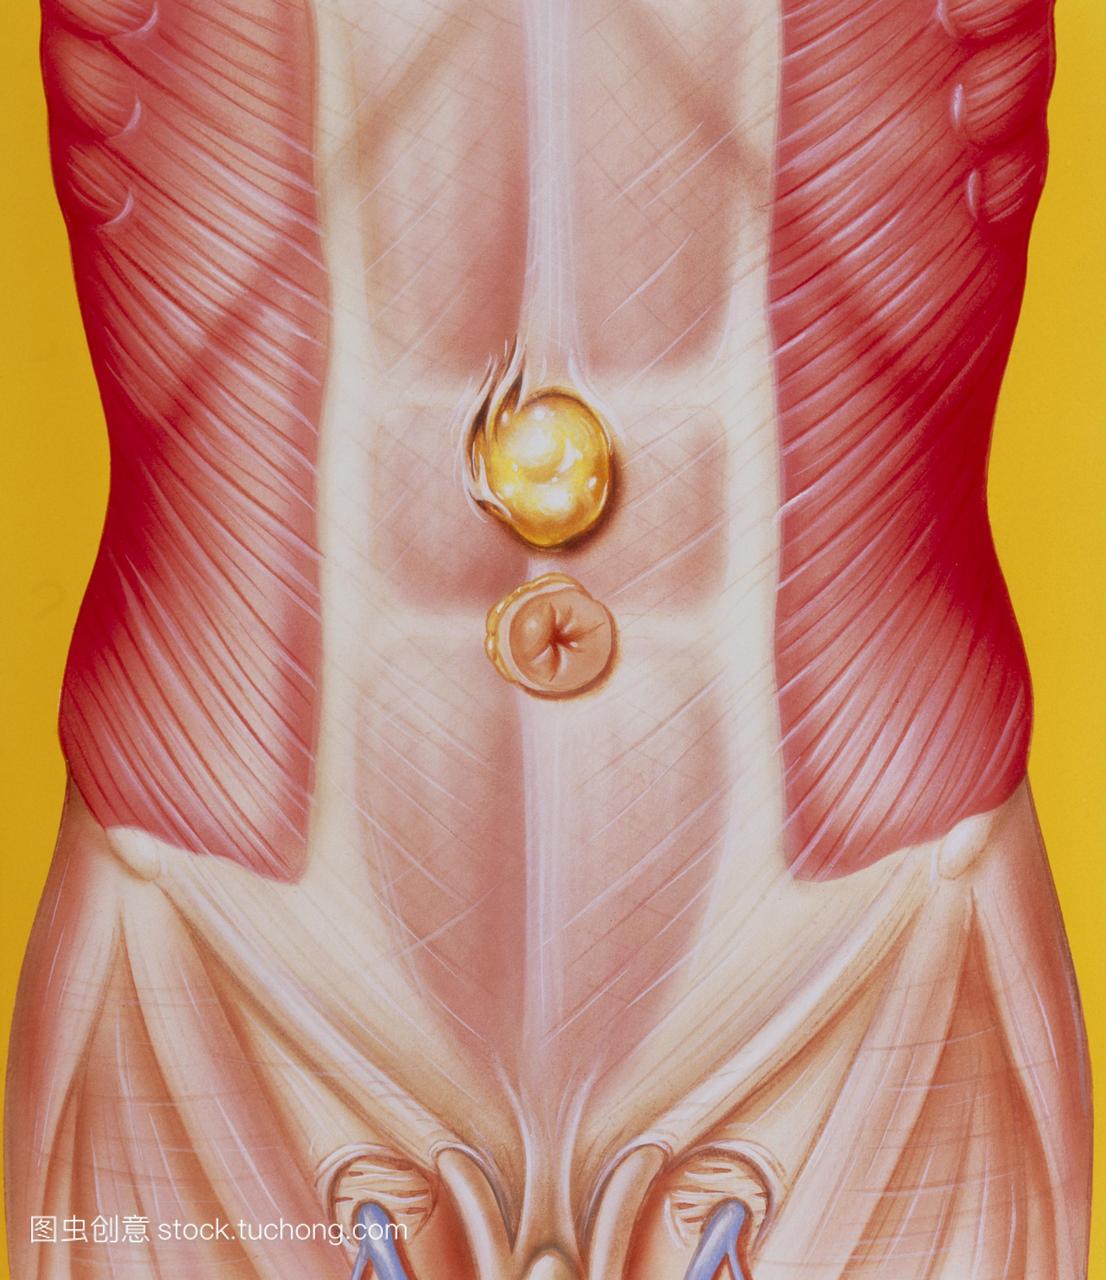 腹部疝。图示成年男性的腹壁疝。在这里看到的